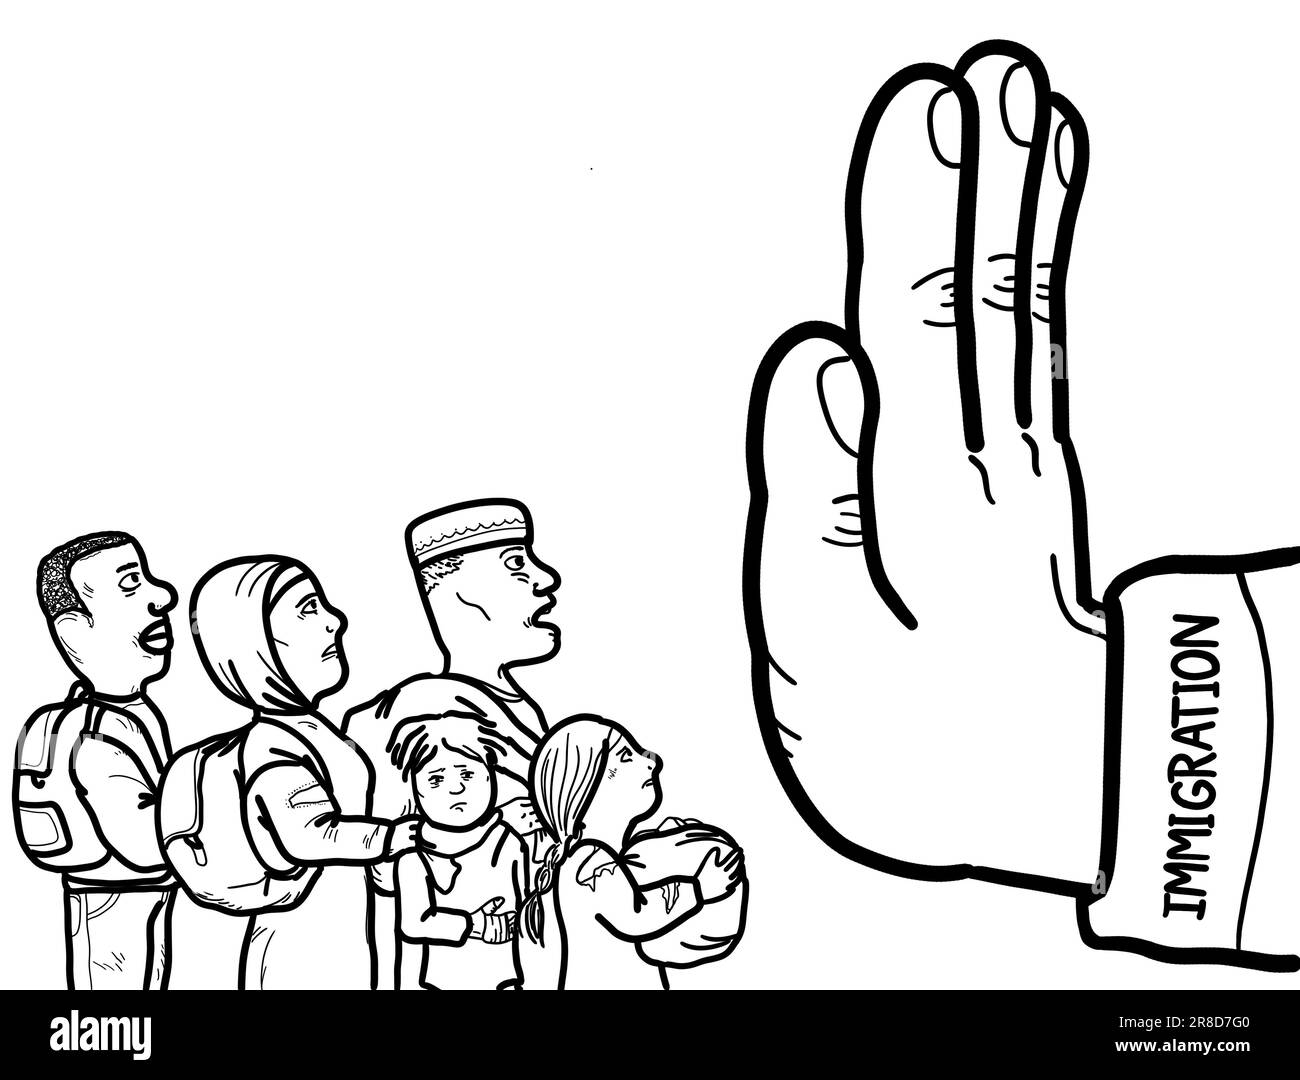 Una mano che simboleggia la prevenzione dell'immigrazione clandestina, dei rifugiati e dei richiedenti asilo dall'ingresso nel paese. Foto Stock